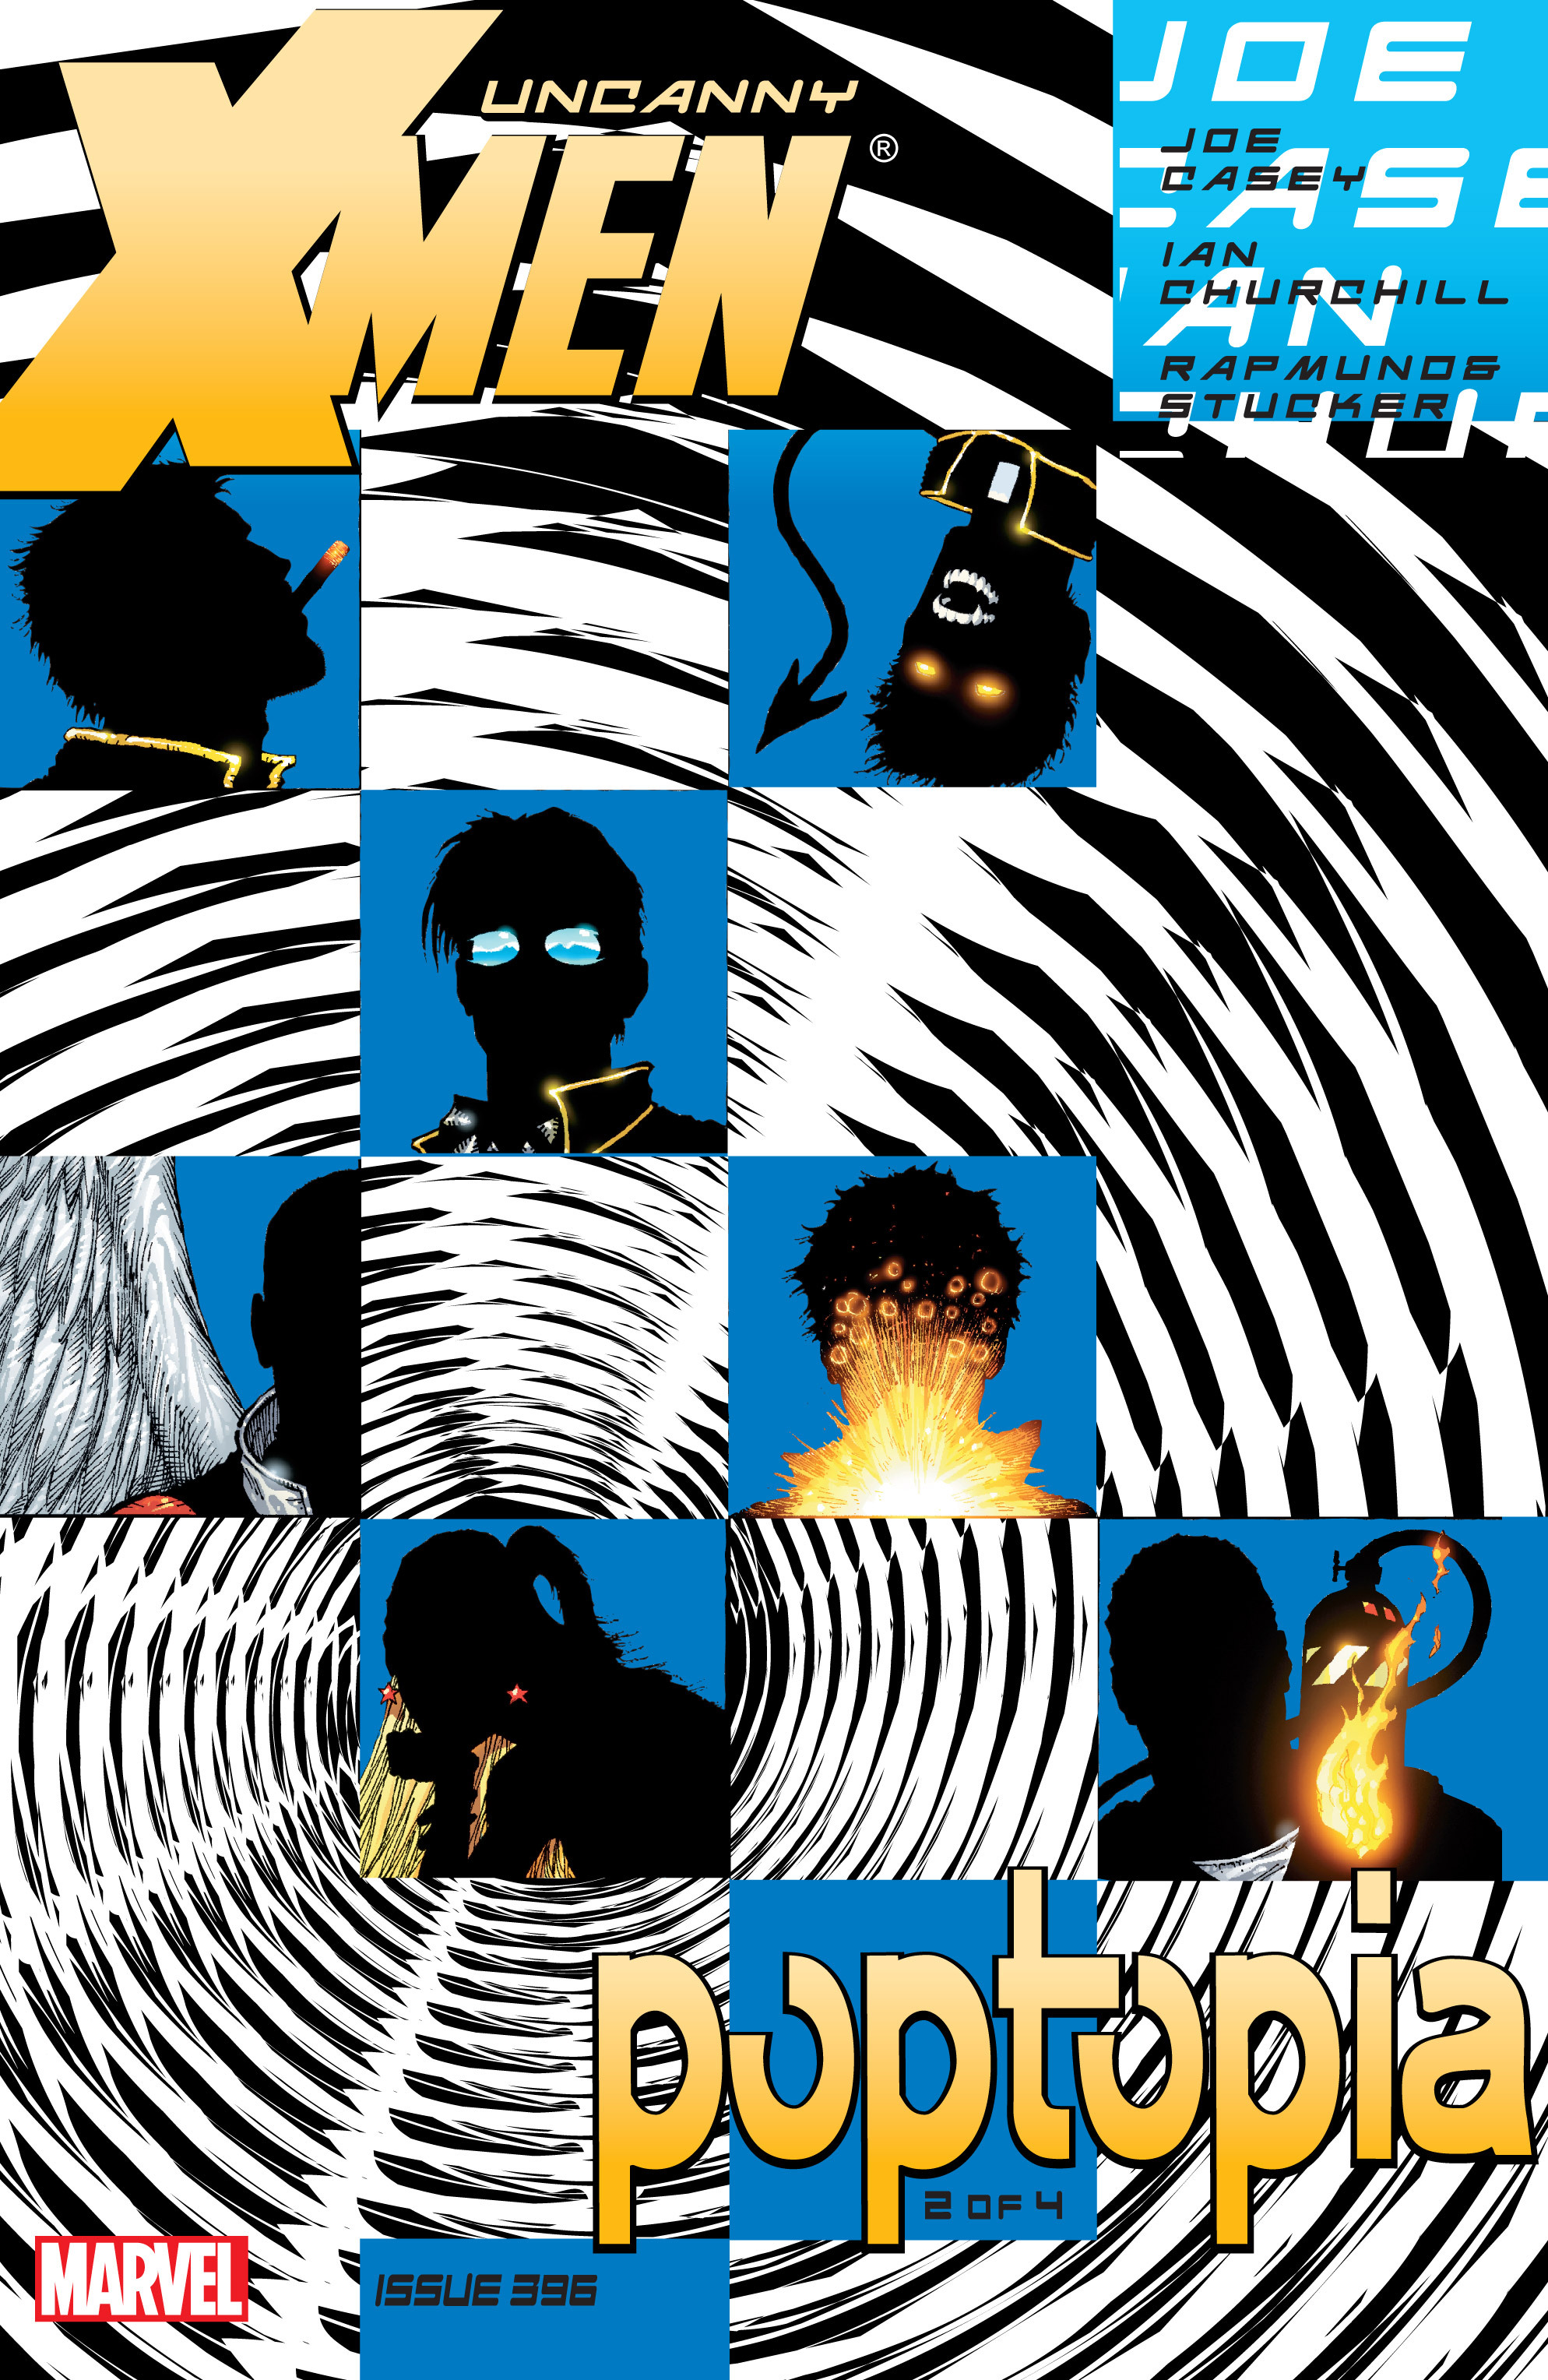 Read online Uncanny X-Men (1963) comic -  Issue #396 - 1